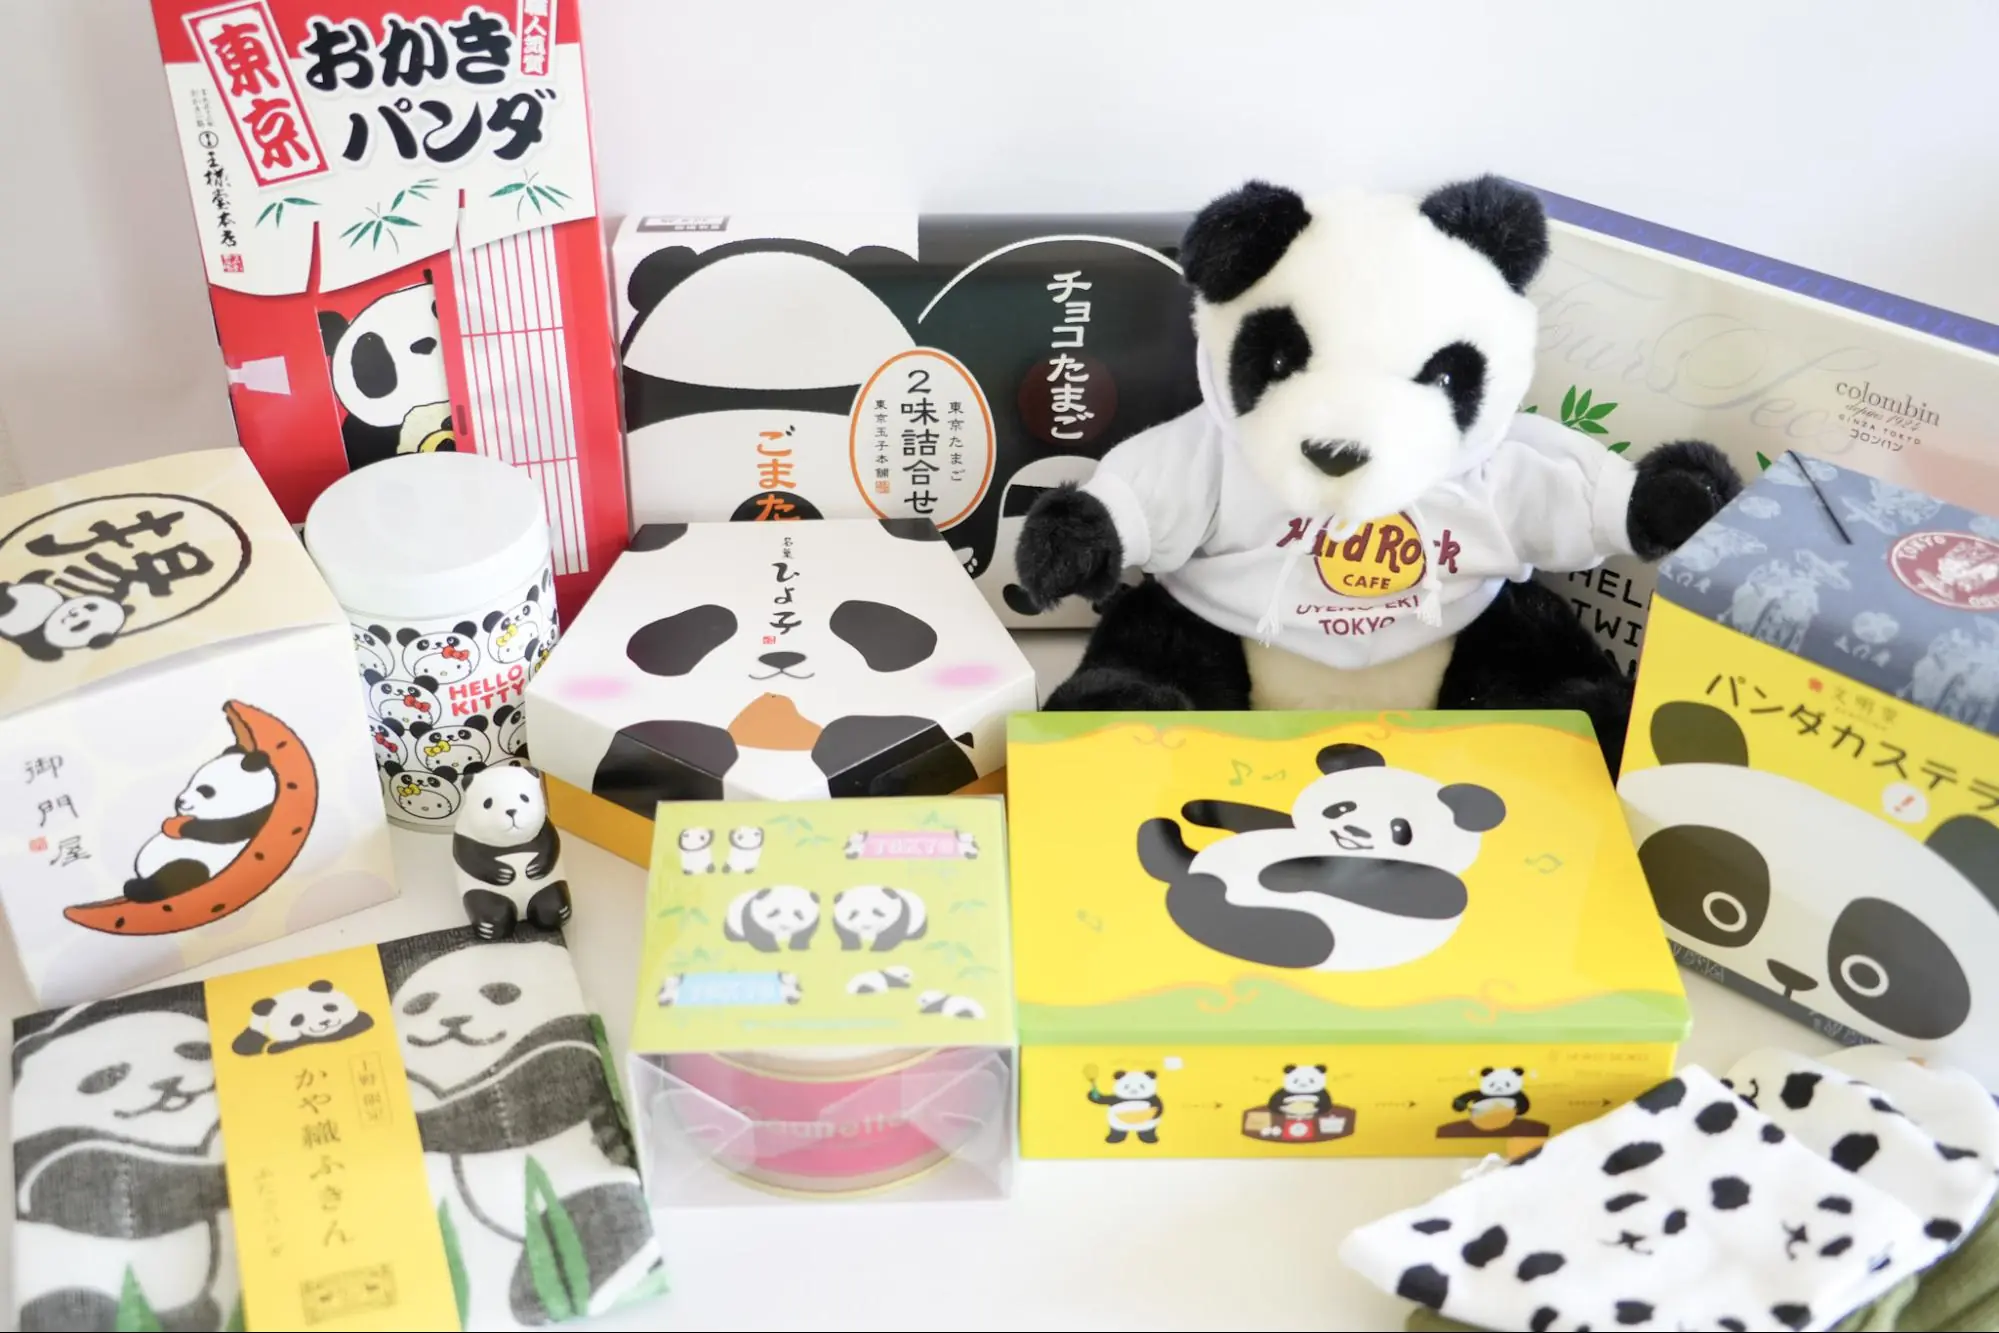 [12 Selections] Available at Ueno Station! panda souvenir